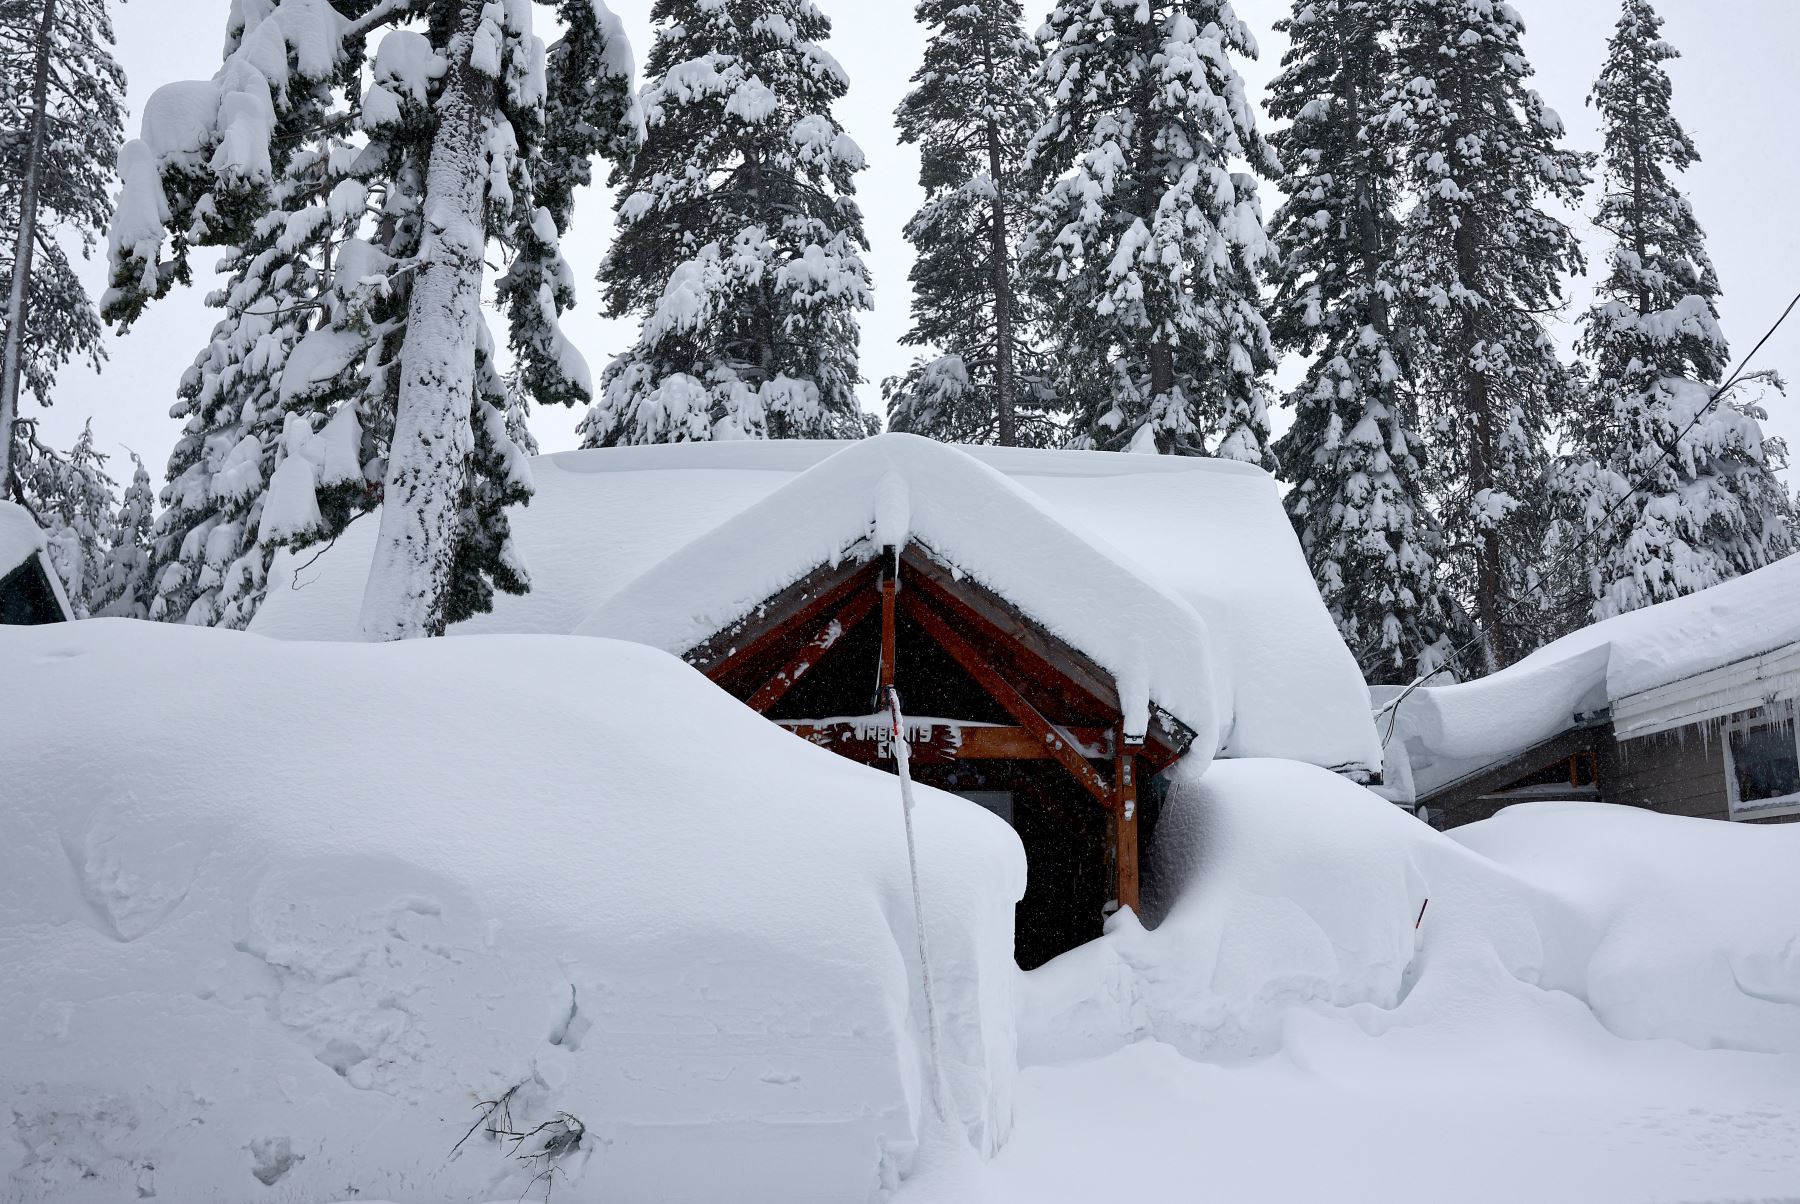 Las casas están cubiertas de nieve durante una poderosa tormenta invernal de varios días en las montañas de Sierra Nevada, que está aumentando la capa de nieve,  en Truckee, California. 
Foto: AFP